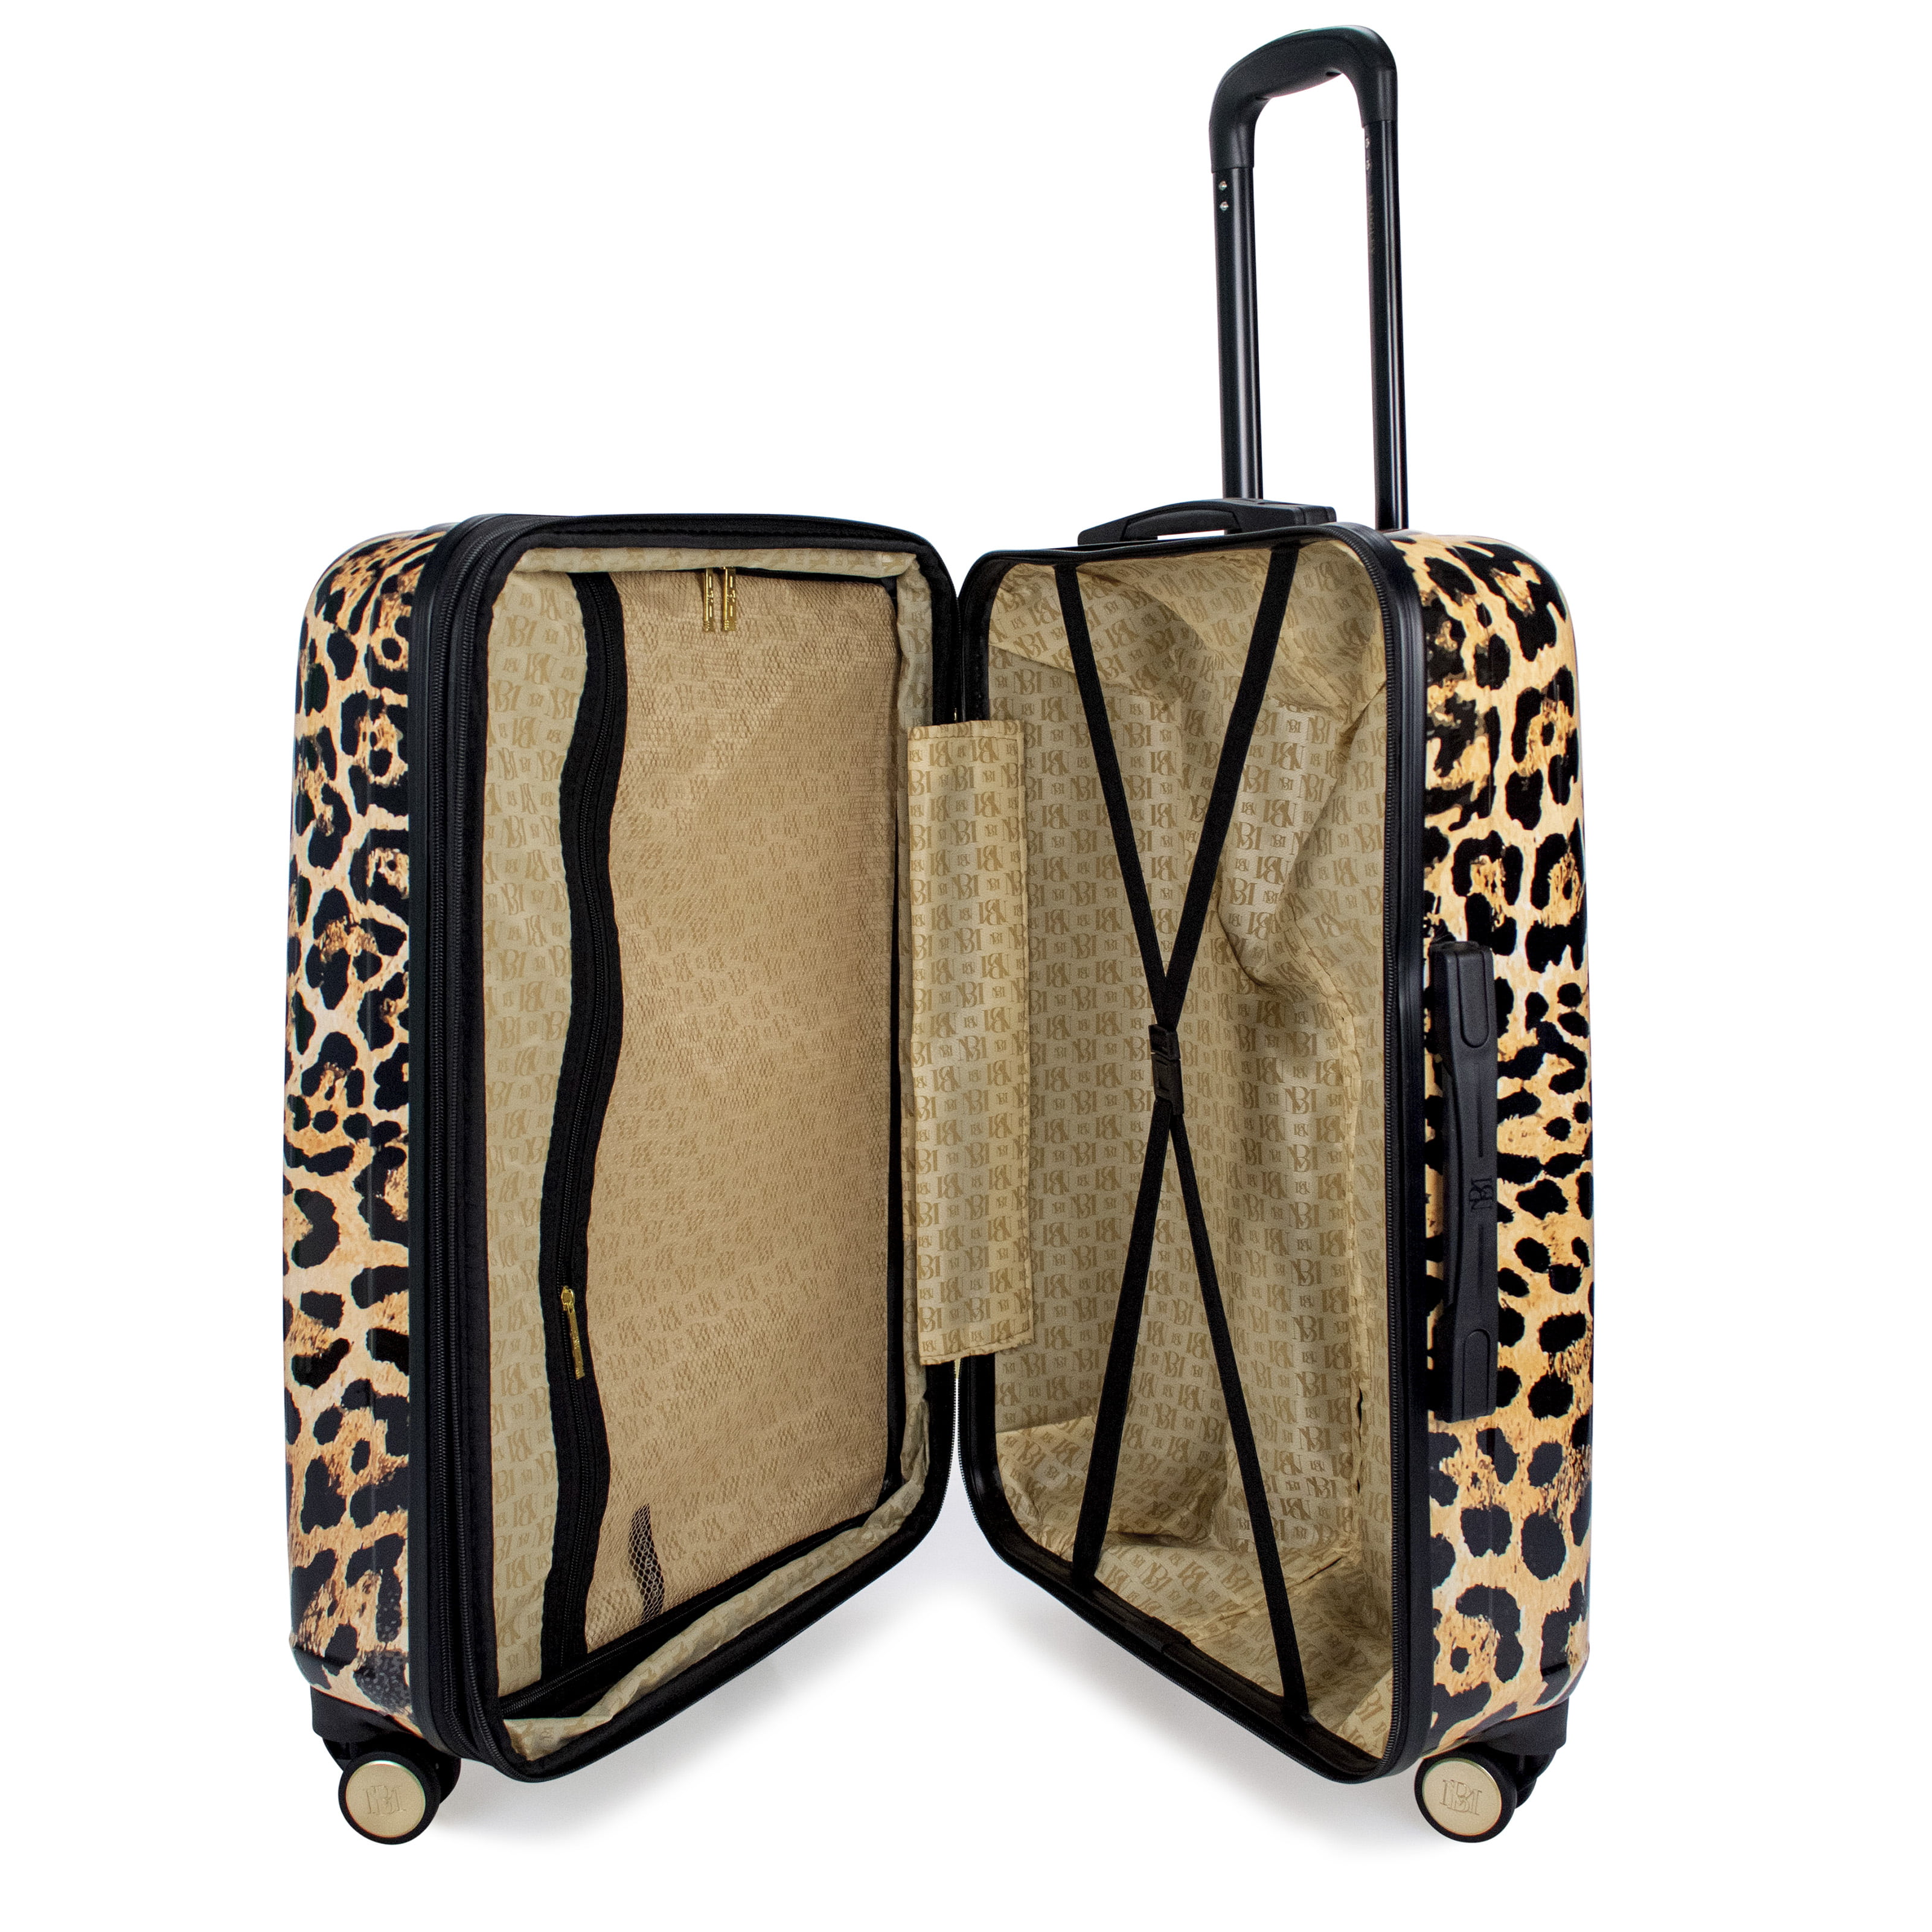 Refillable Travel Pouches 3pc Set – Leopard Boutique